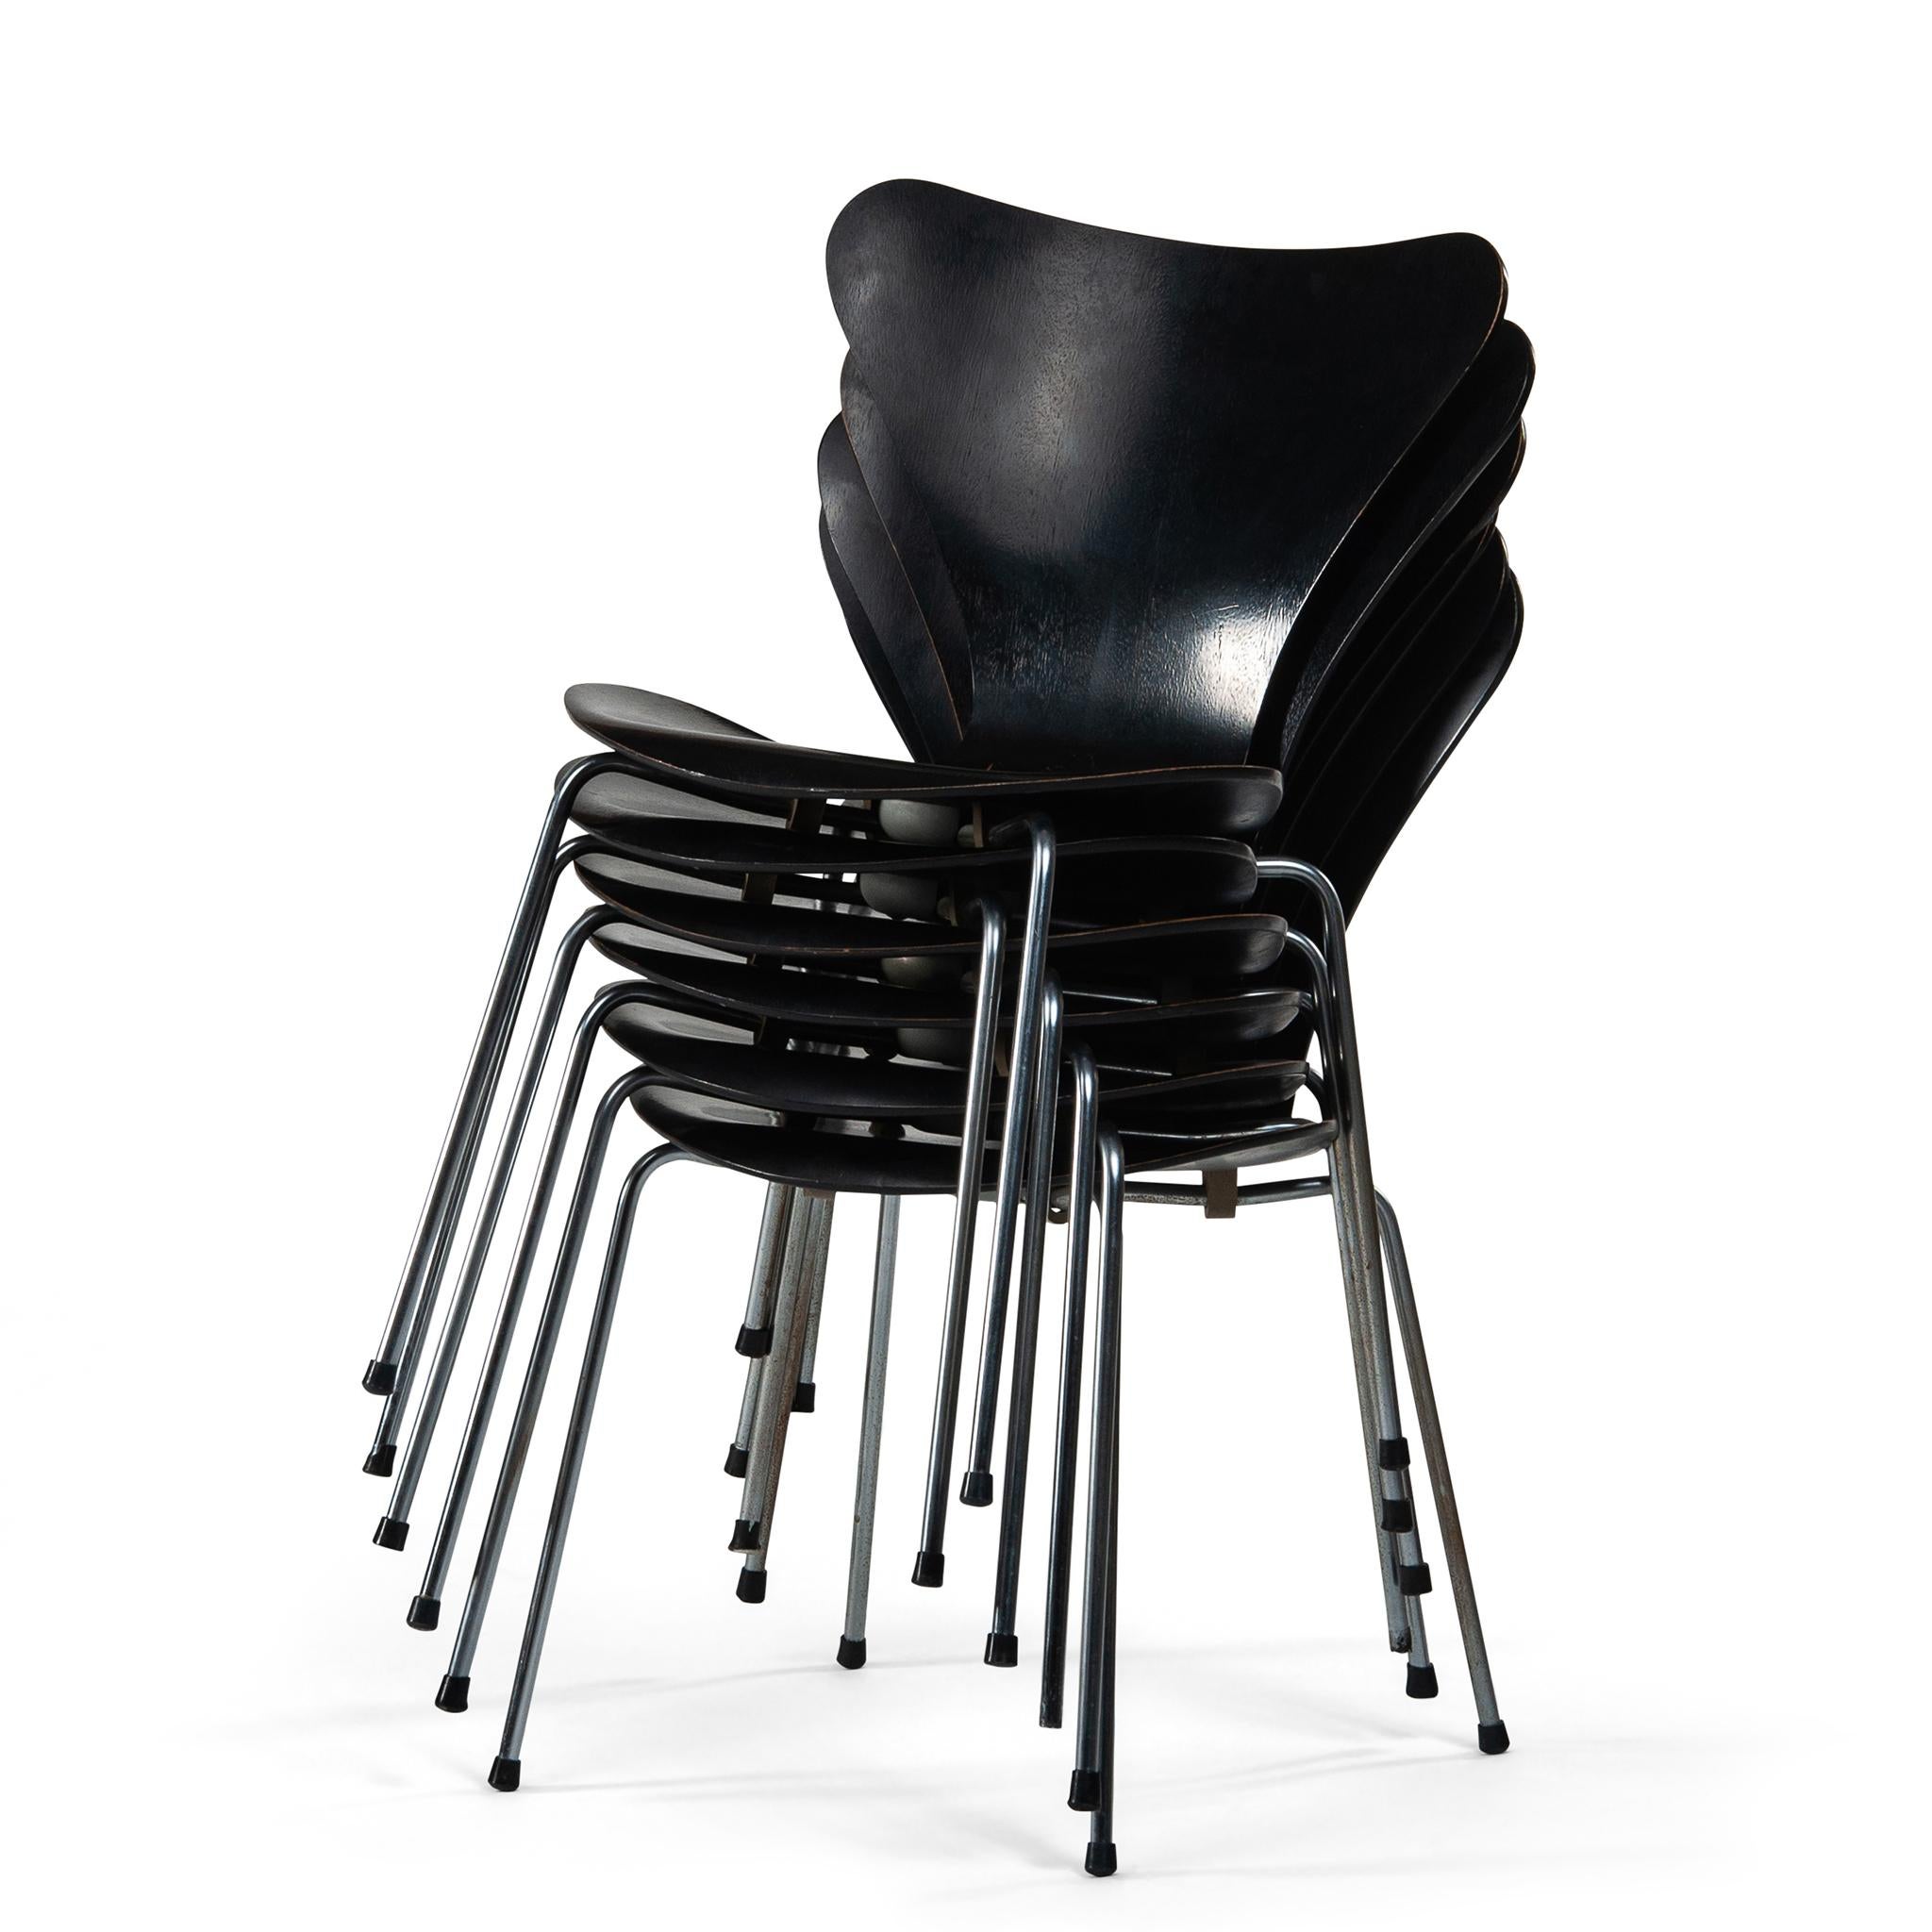 Die Stühle der Serie 7, auch bekannt als Modell 3107, sind ein Meisterwerk des Designs der Jahrhundertmitte. Diese Stühle wurden 1955 von dem berühmten dänischen Designer Arne Jacobsen für Fritz Hansen entworfen und sind zu einem Symbol des